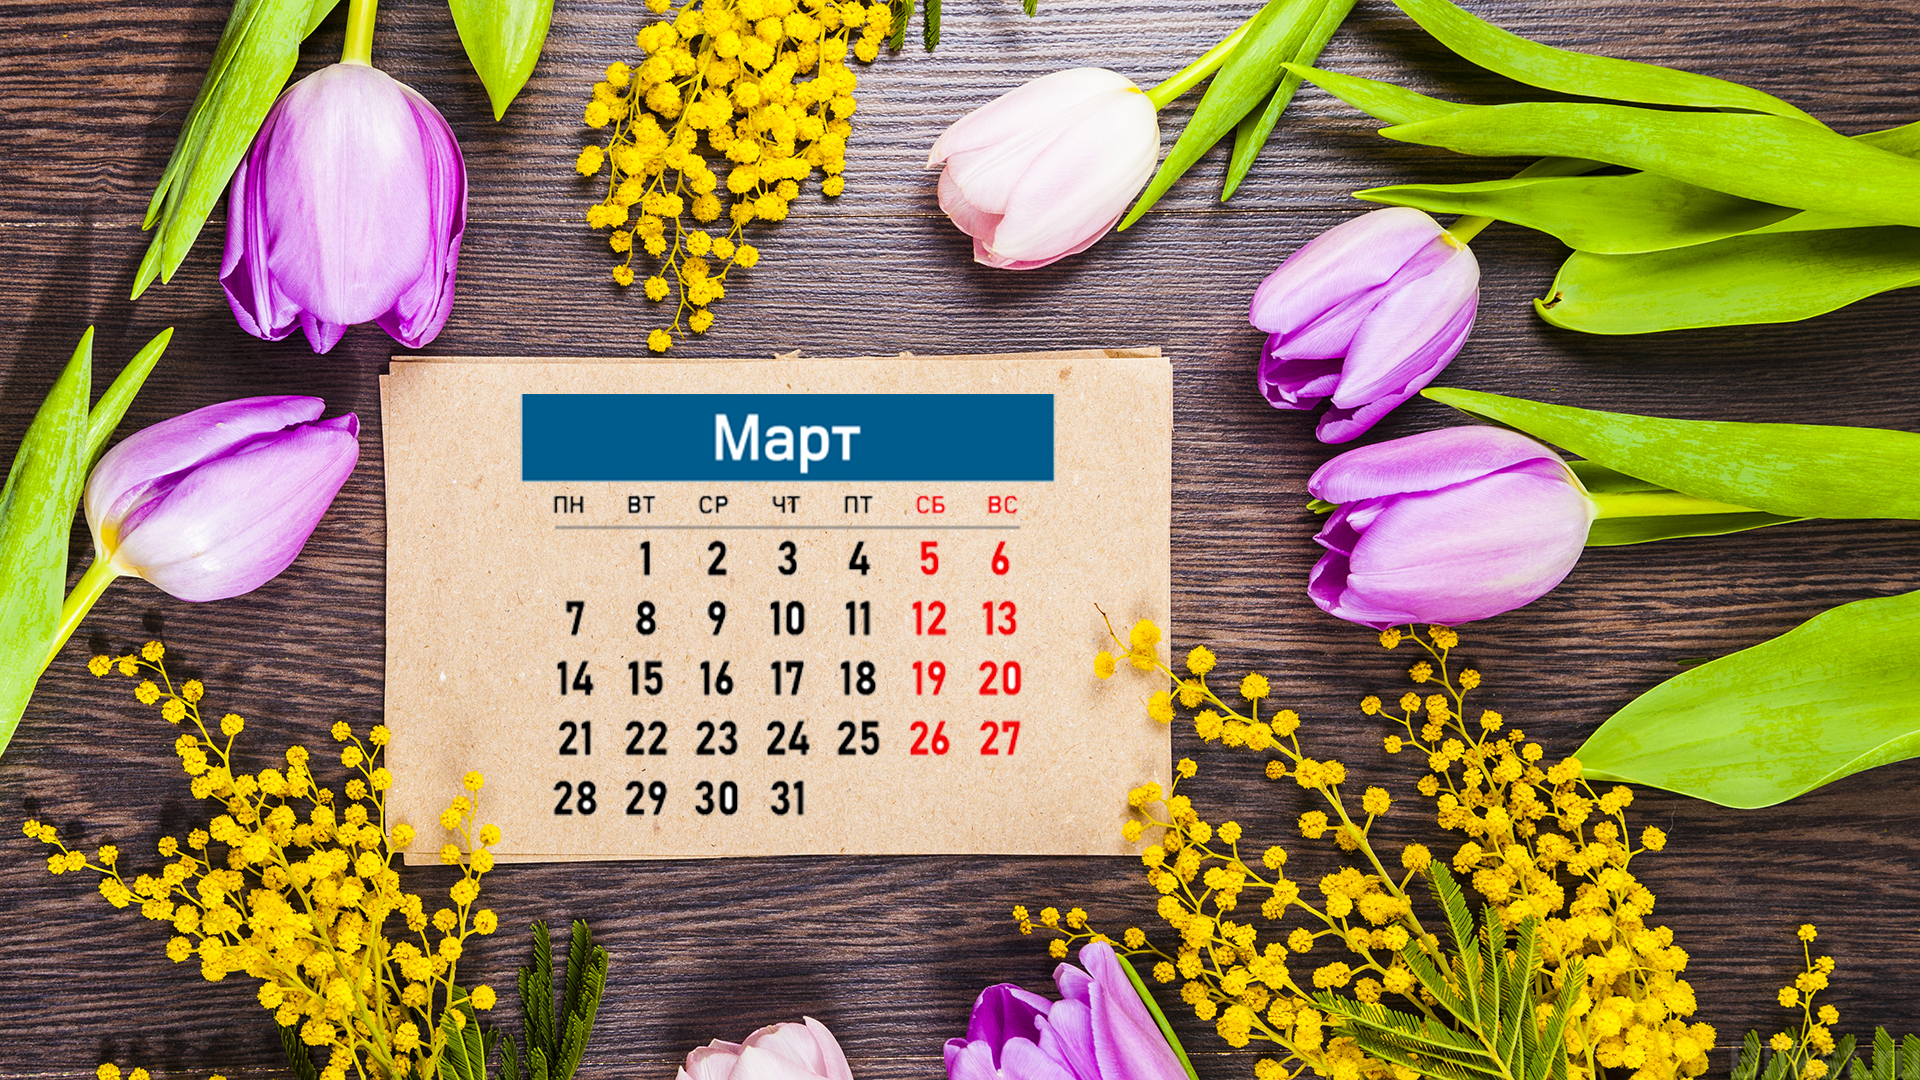 March calendar. Обои март. Март обои на рабочий стол 1920х1080. Весенние картинки для календаря.